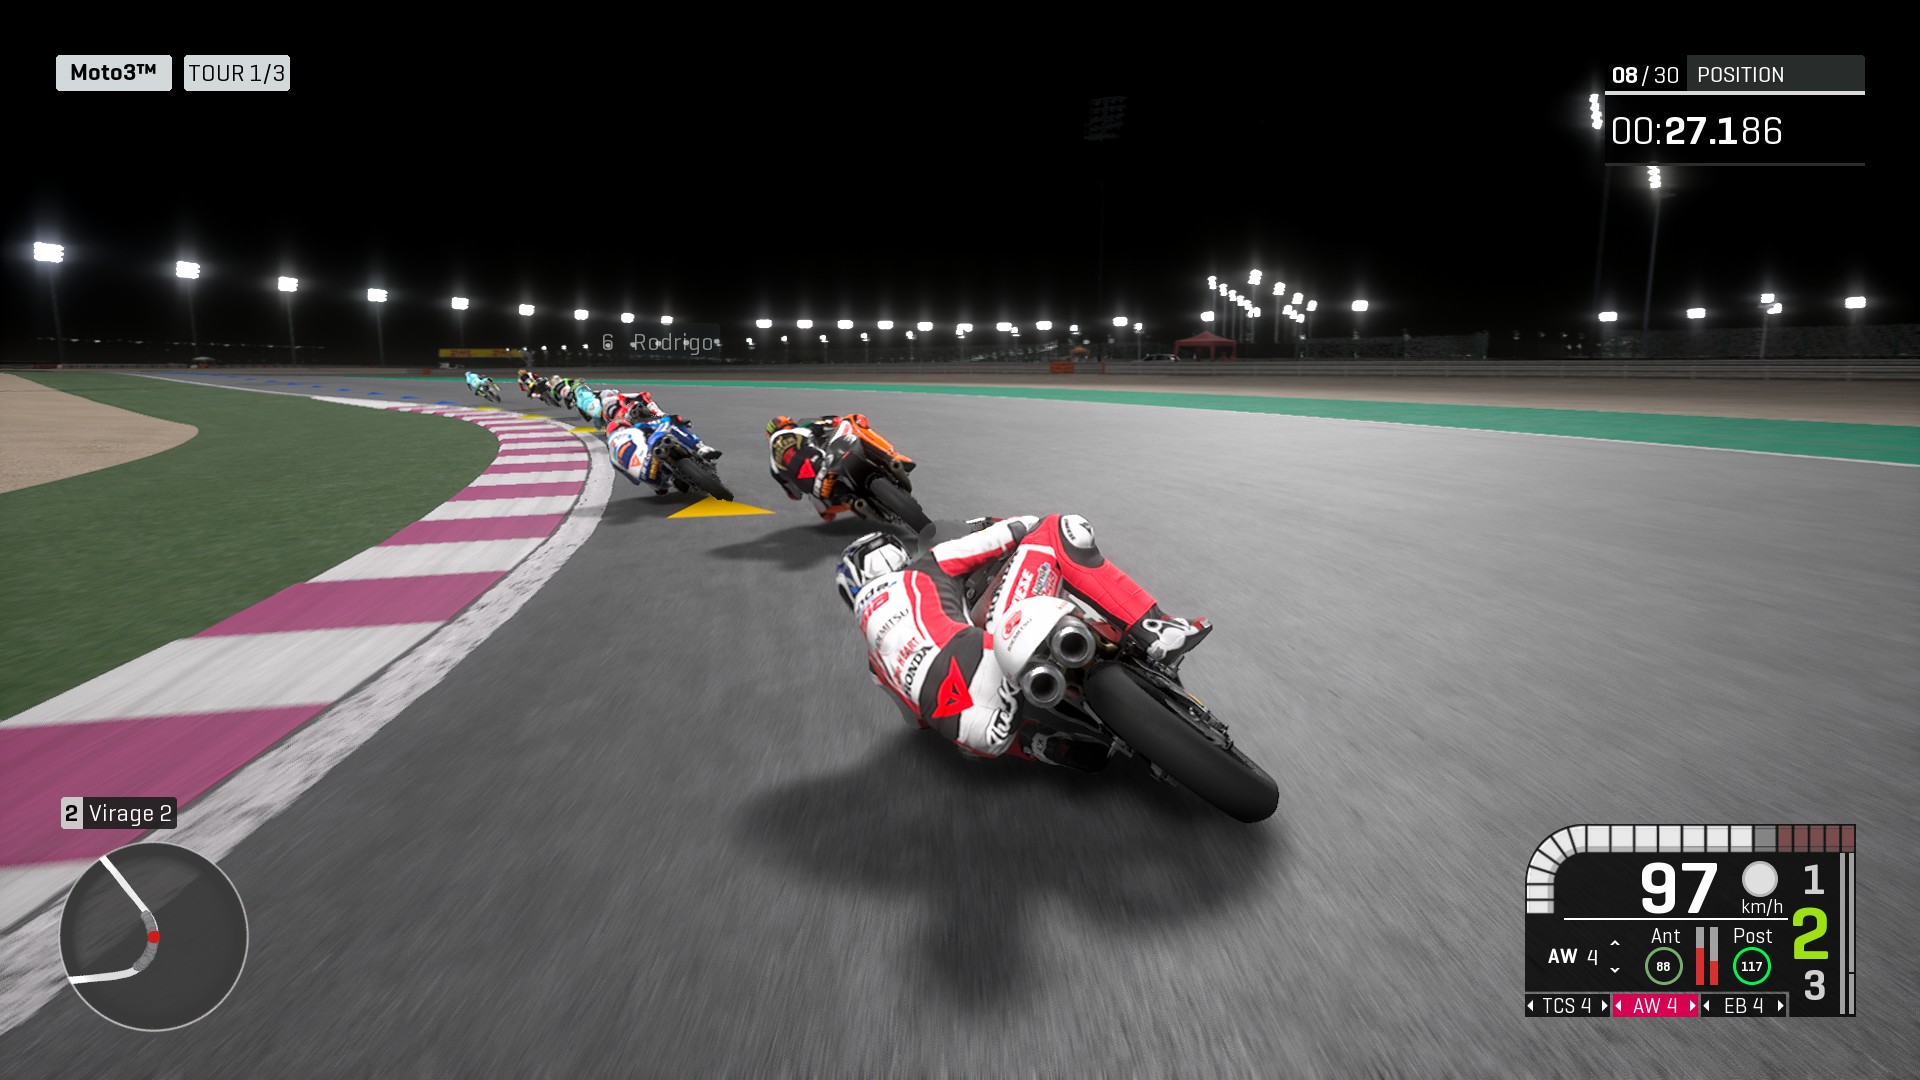 Notre test de MotoGP 19